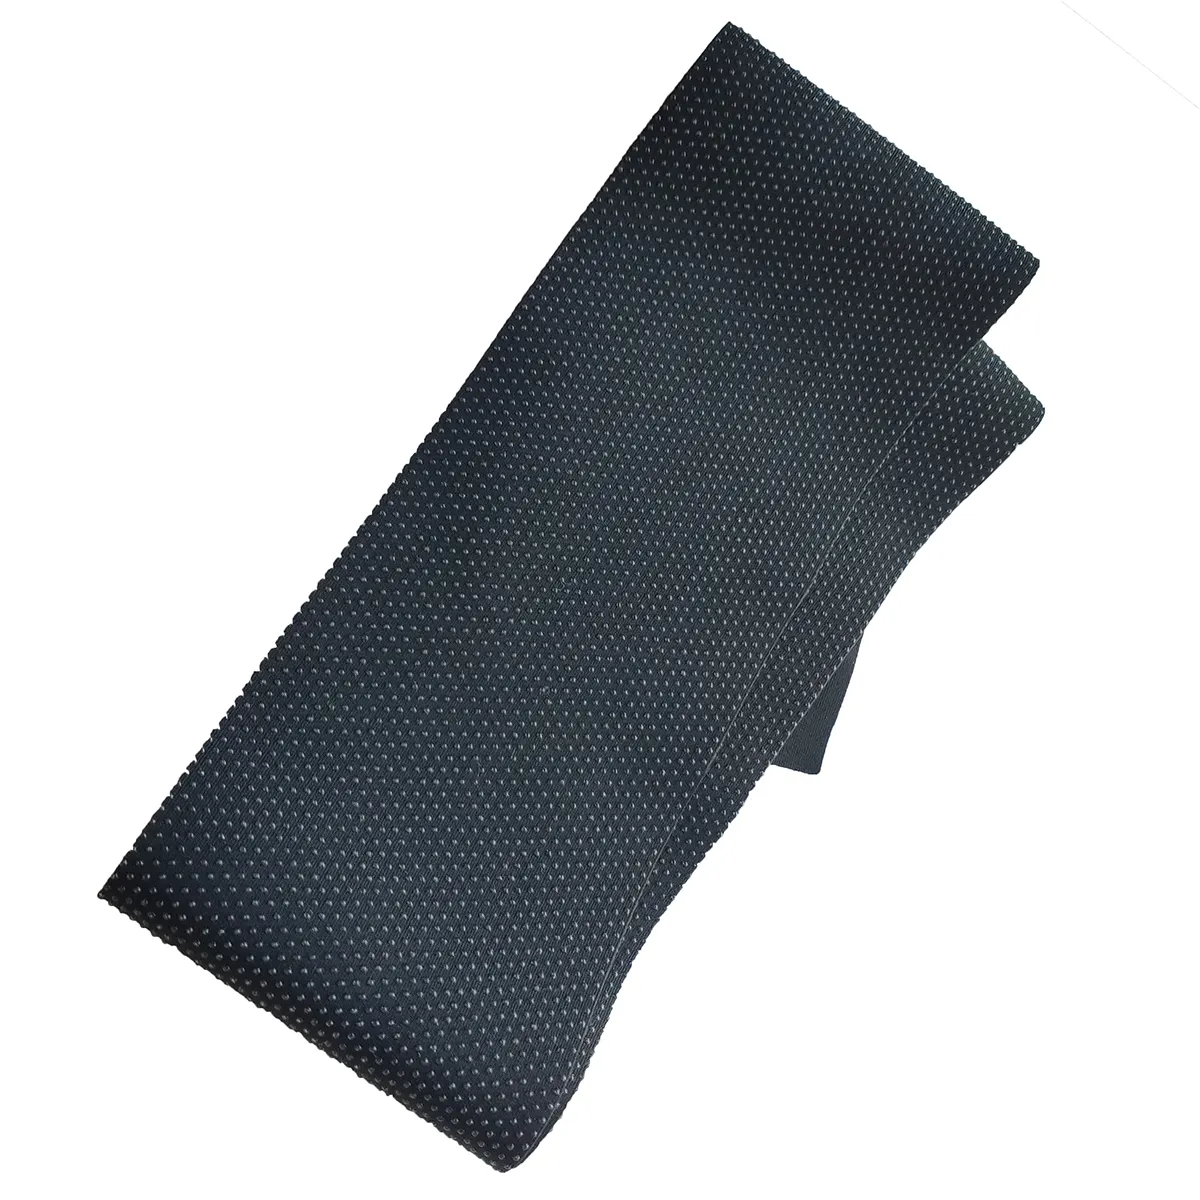 विरोधी पर्ची सिलिकॉन लेपित मुद्रित नायलॉन स्पैन्डेक्स 4 तरीके stretchy गैर पर्ची कपड़े खेल पहनने के लिए